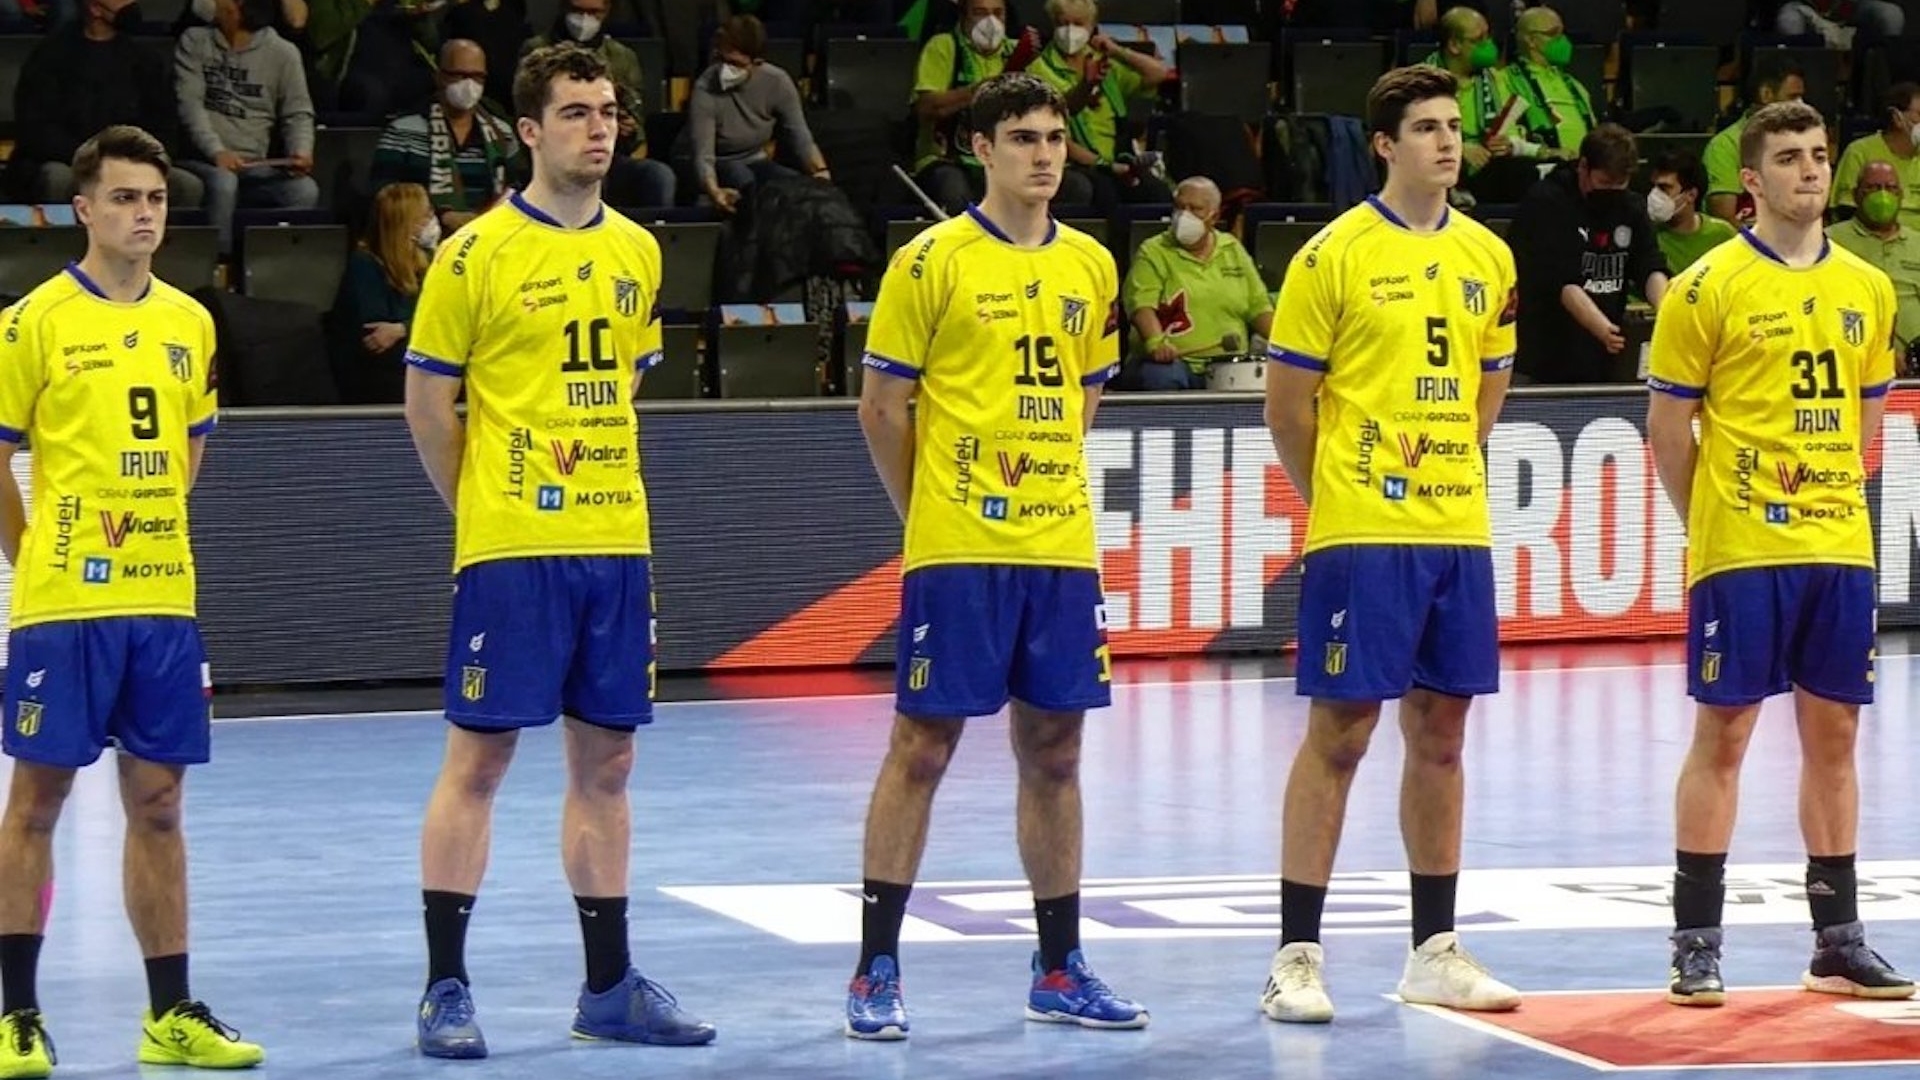 Bidasoa Irún, EHF European League, Handball